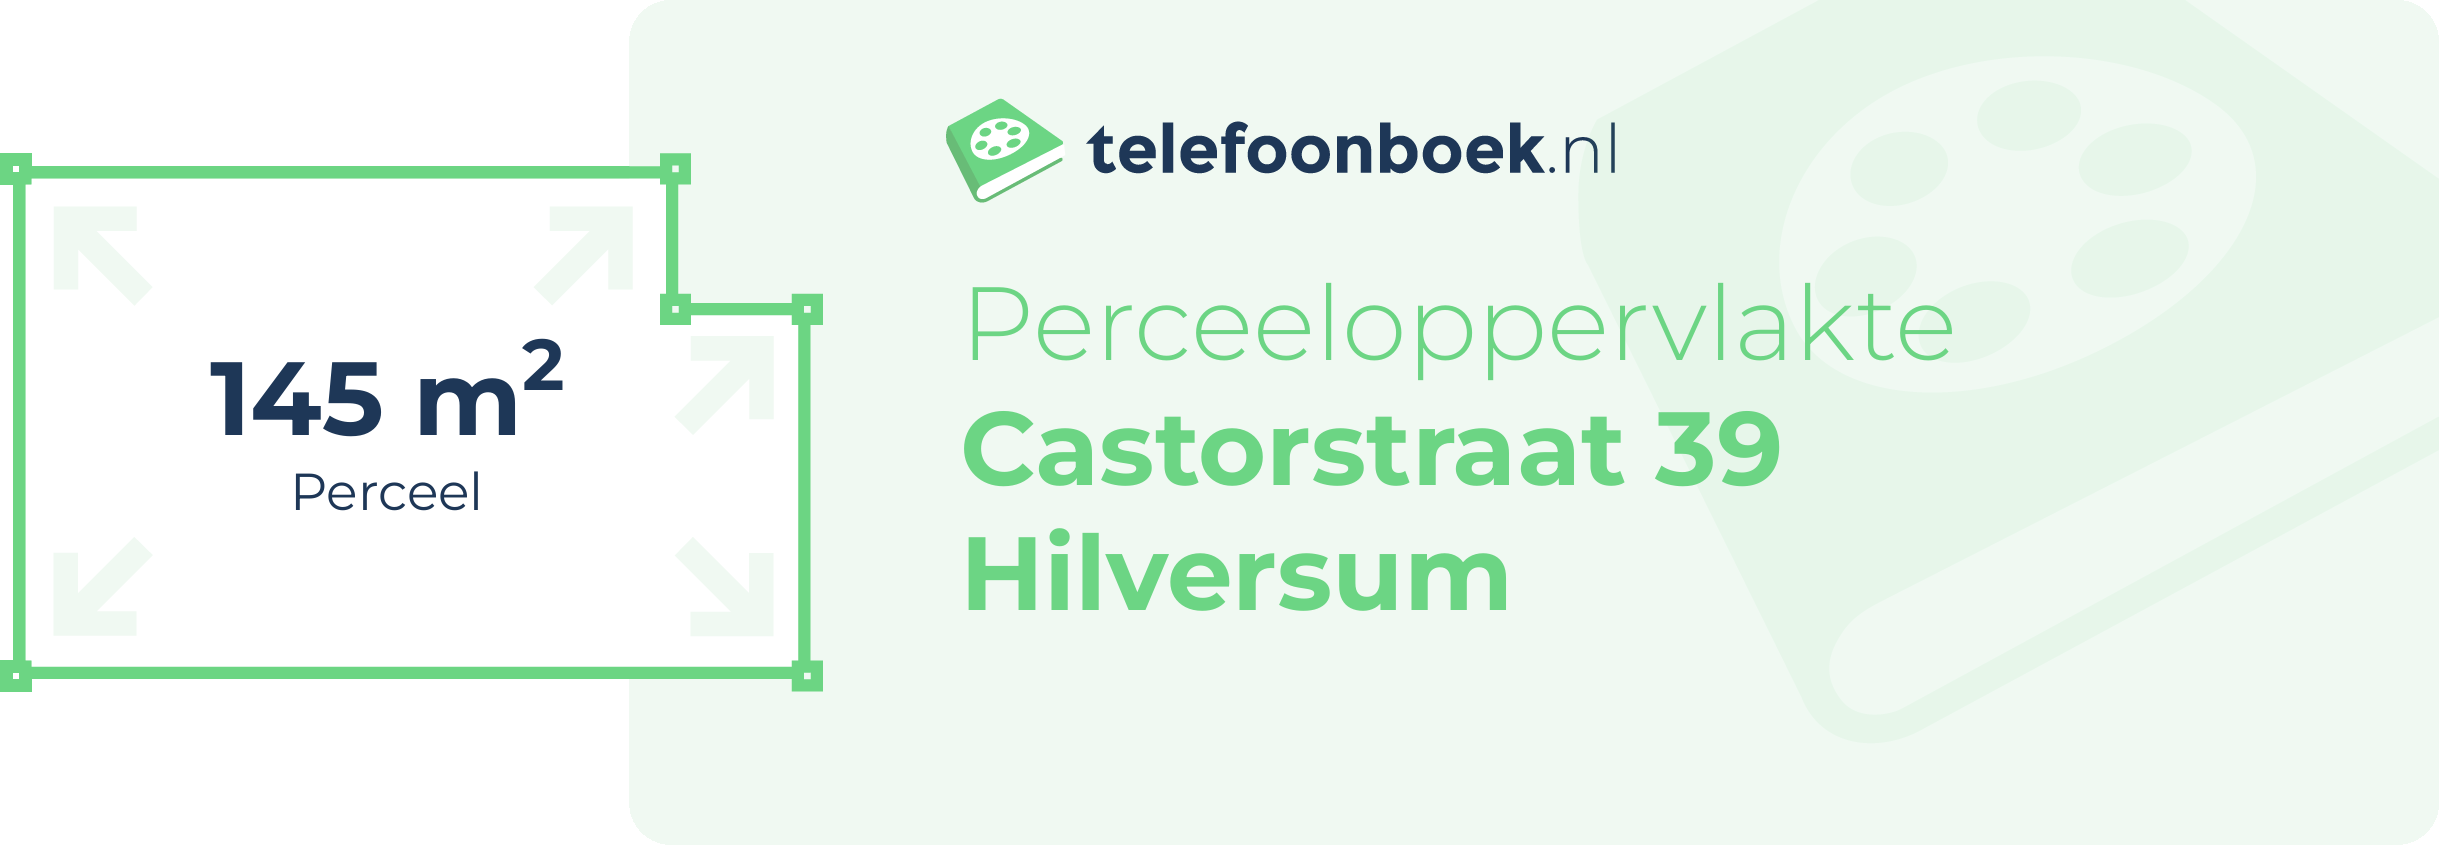 Perceeloppervlakte Castorstraat 39 Hilversum